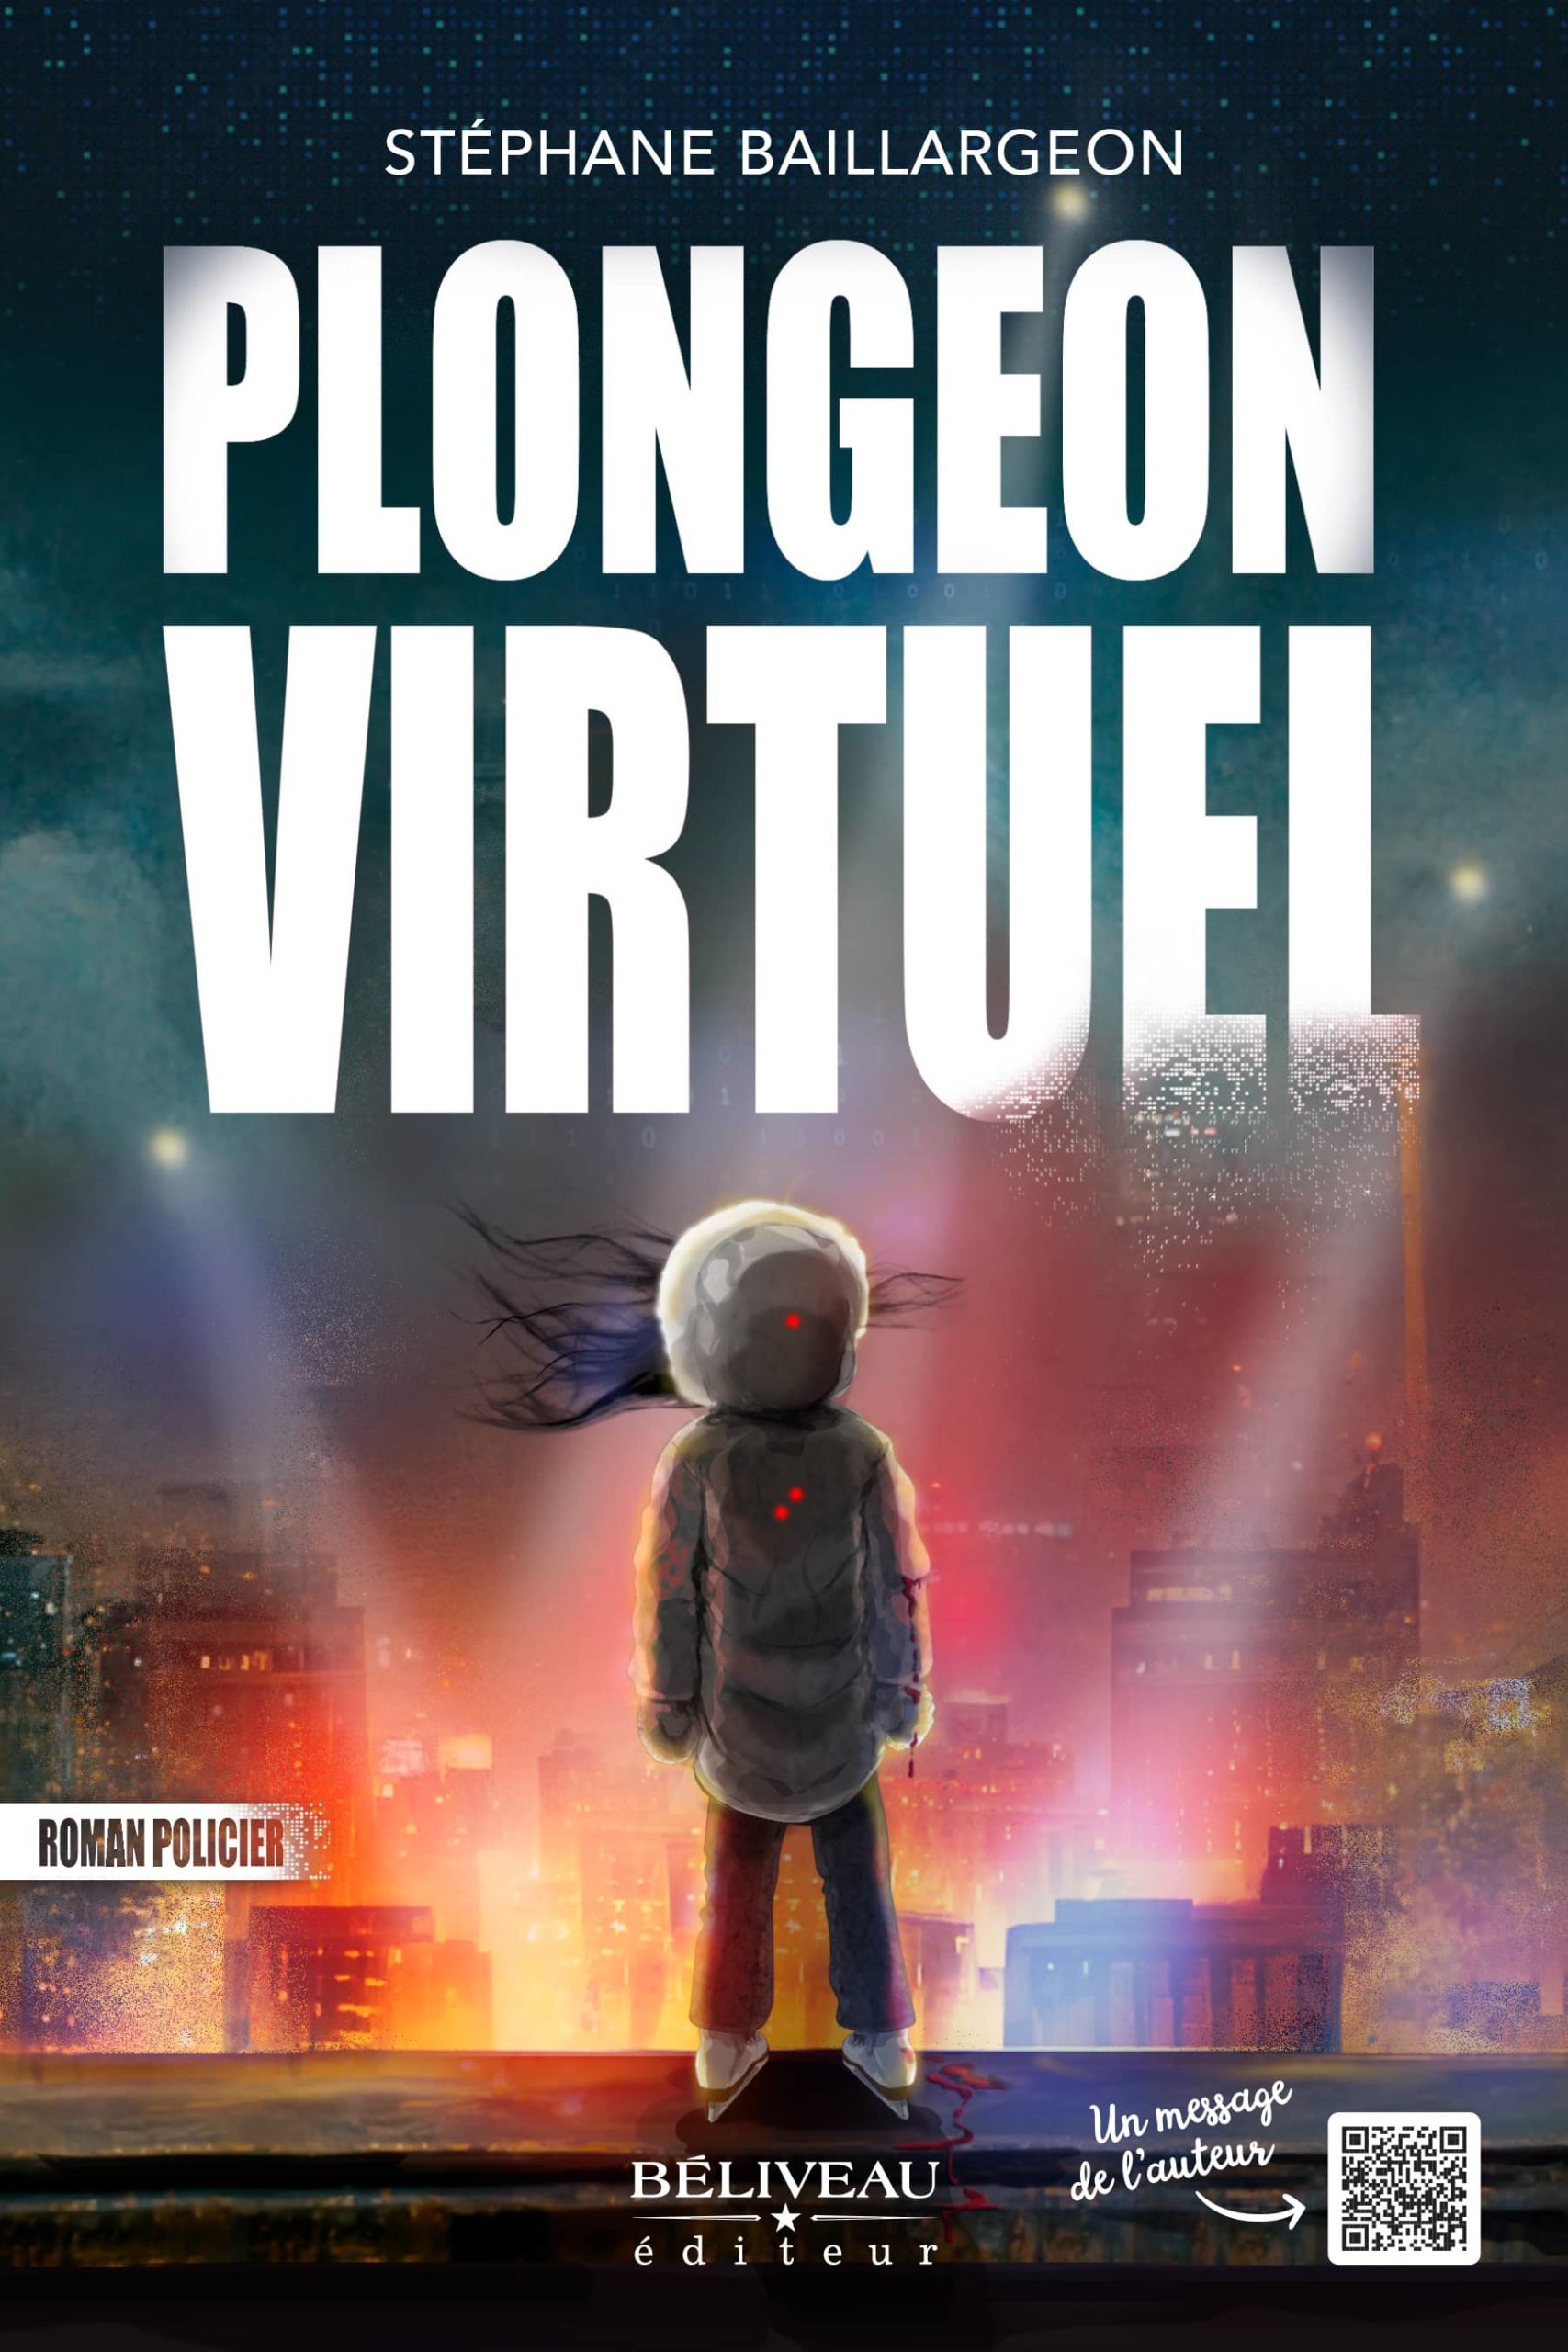 Plongeon virtuel polar thriller